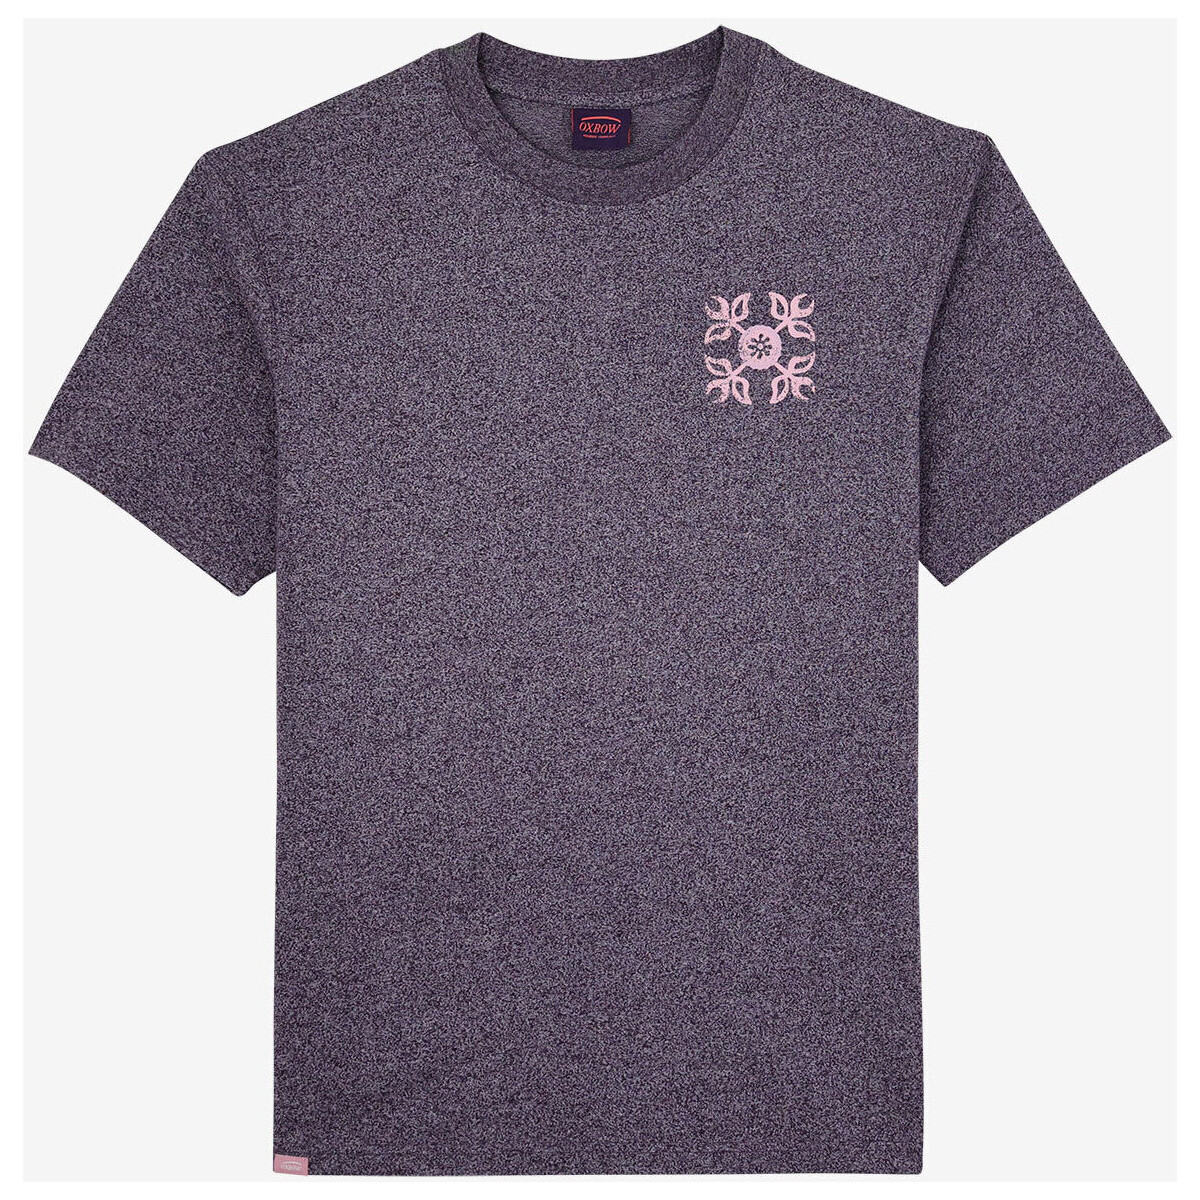 Oxbow Violet Tee-shirt manches courtes imprimé P2TEROZ G2t7kqmd